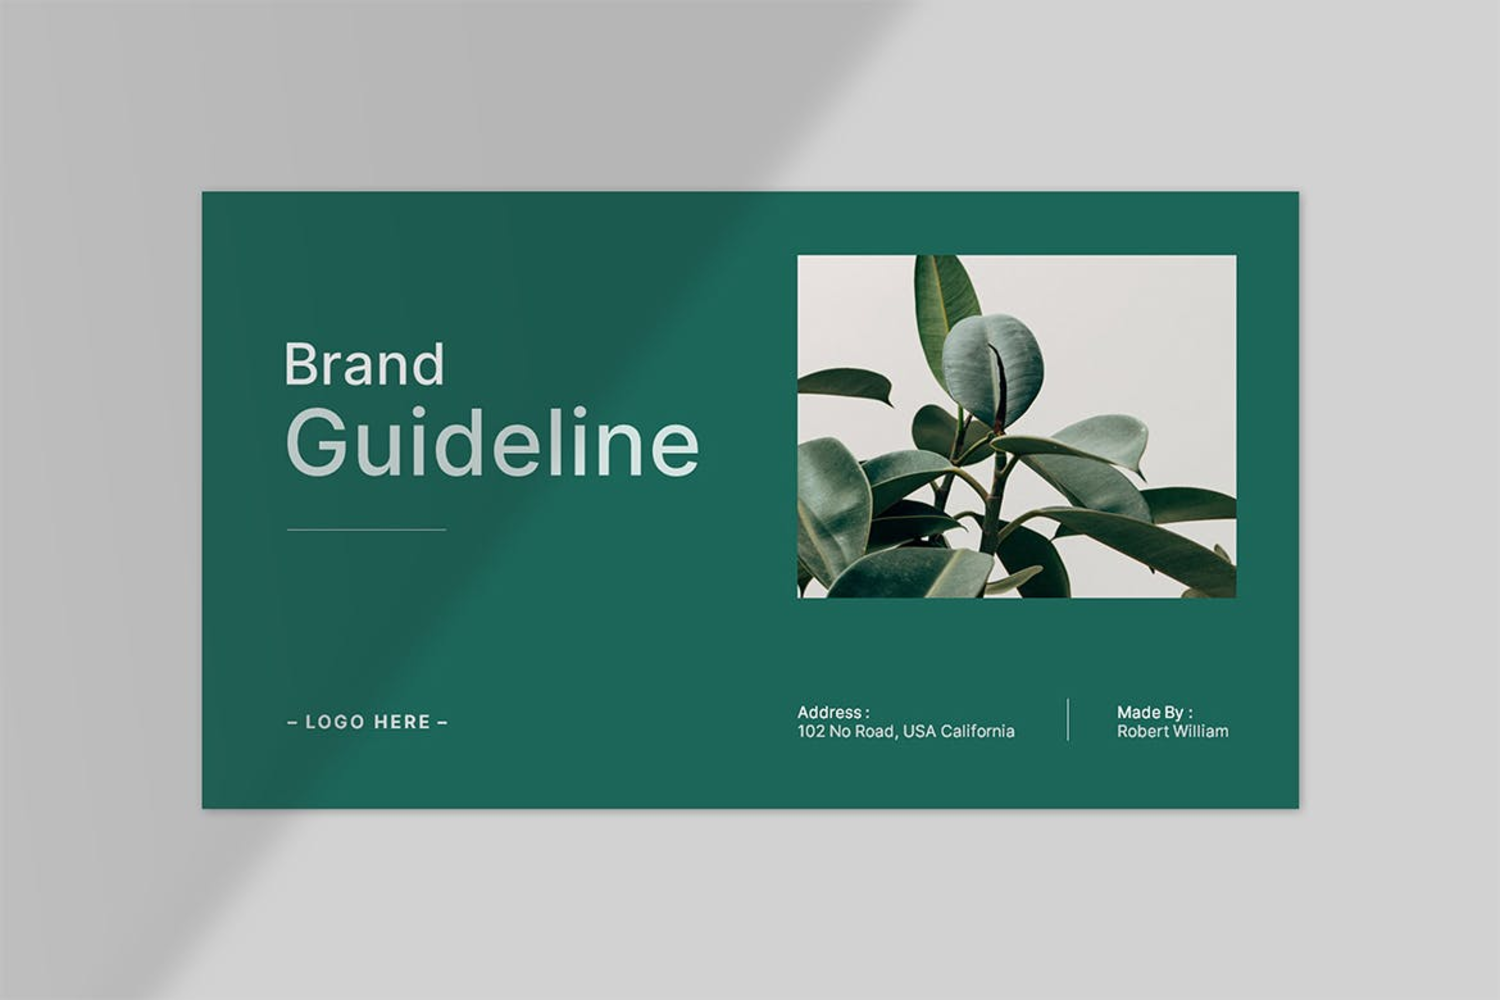 4666 简洁品牌设计视觉识别系统VIS提案排版PPT模版 Brand Guideline Presentation@GOOODME.COM